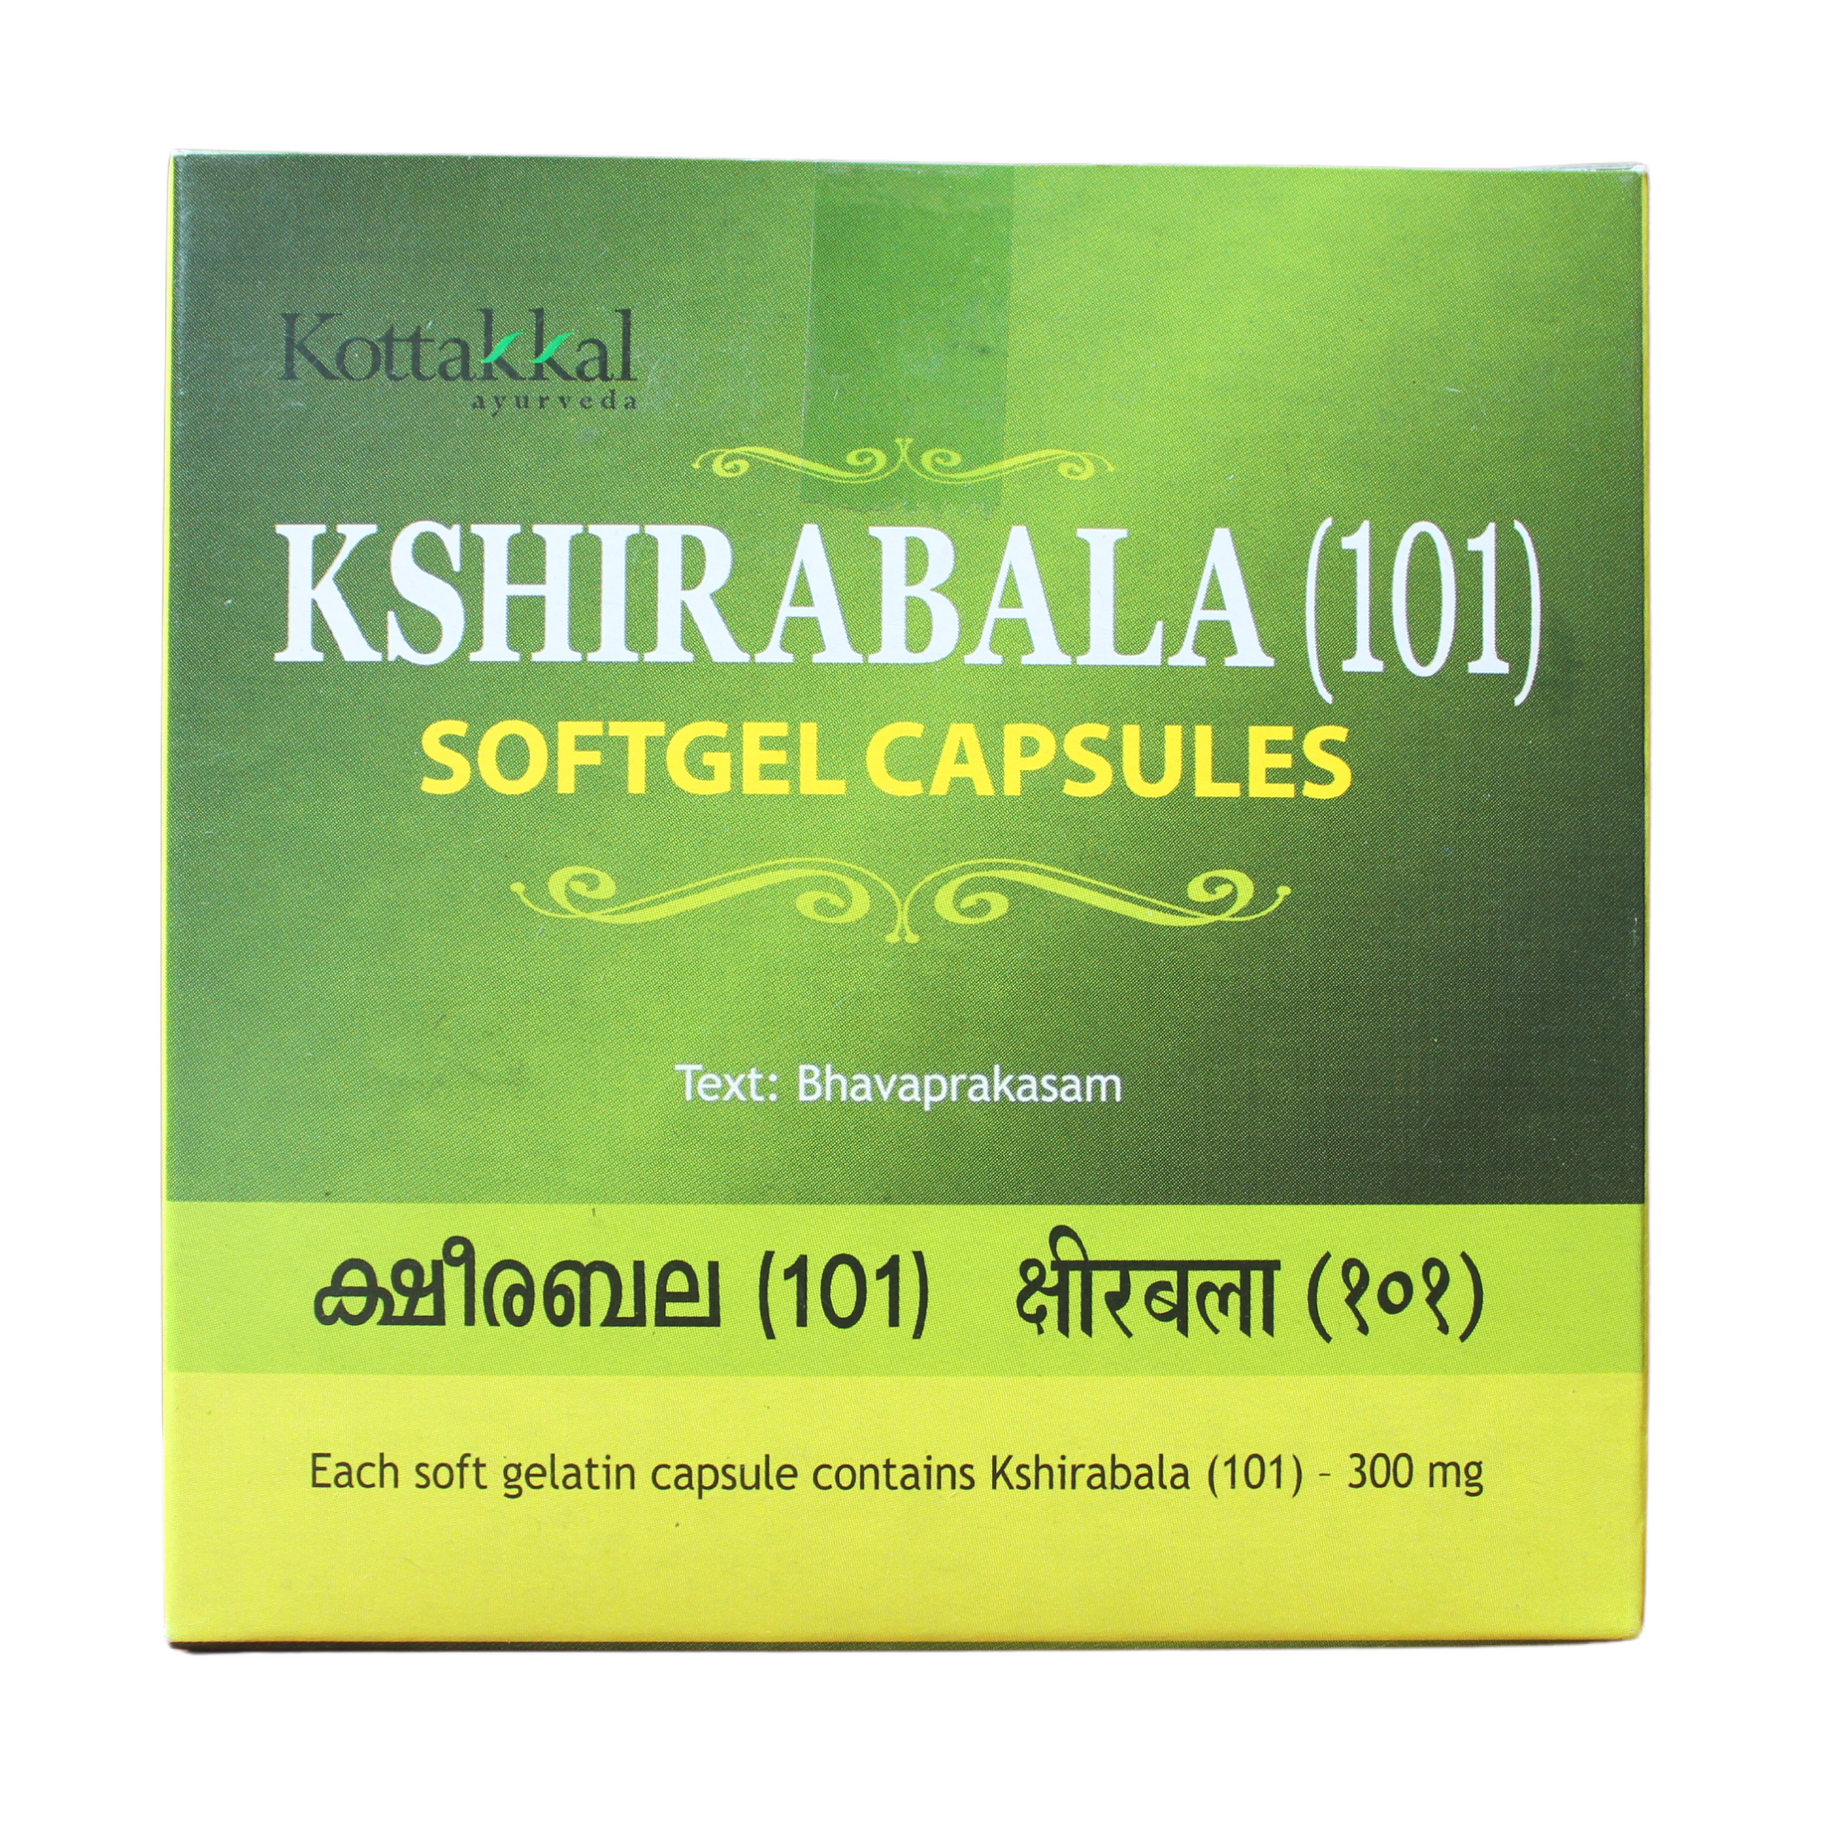 Shop Kottakkal Ksheerabala 101 Softgel Capsules - 10Capsules at price 55.00 from Kottakkal Online - Ayush Care